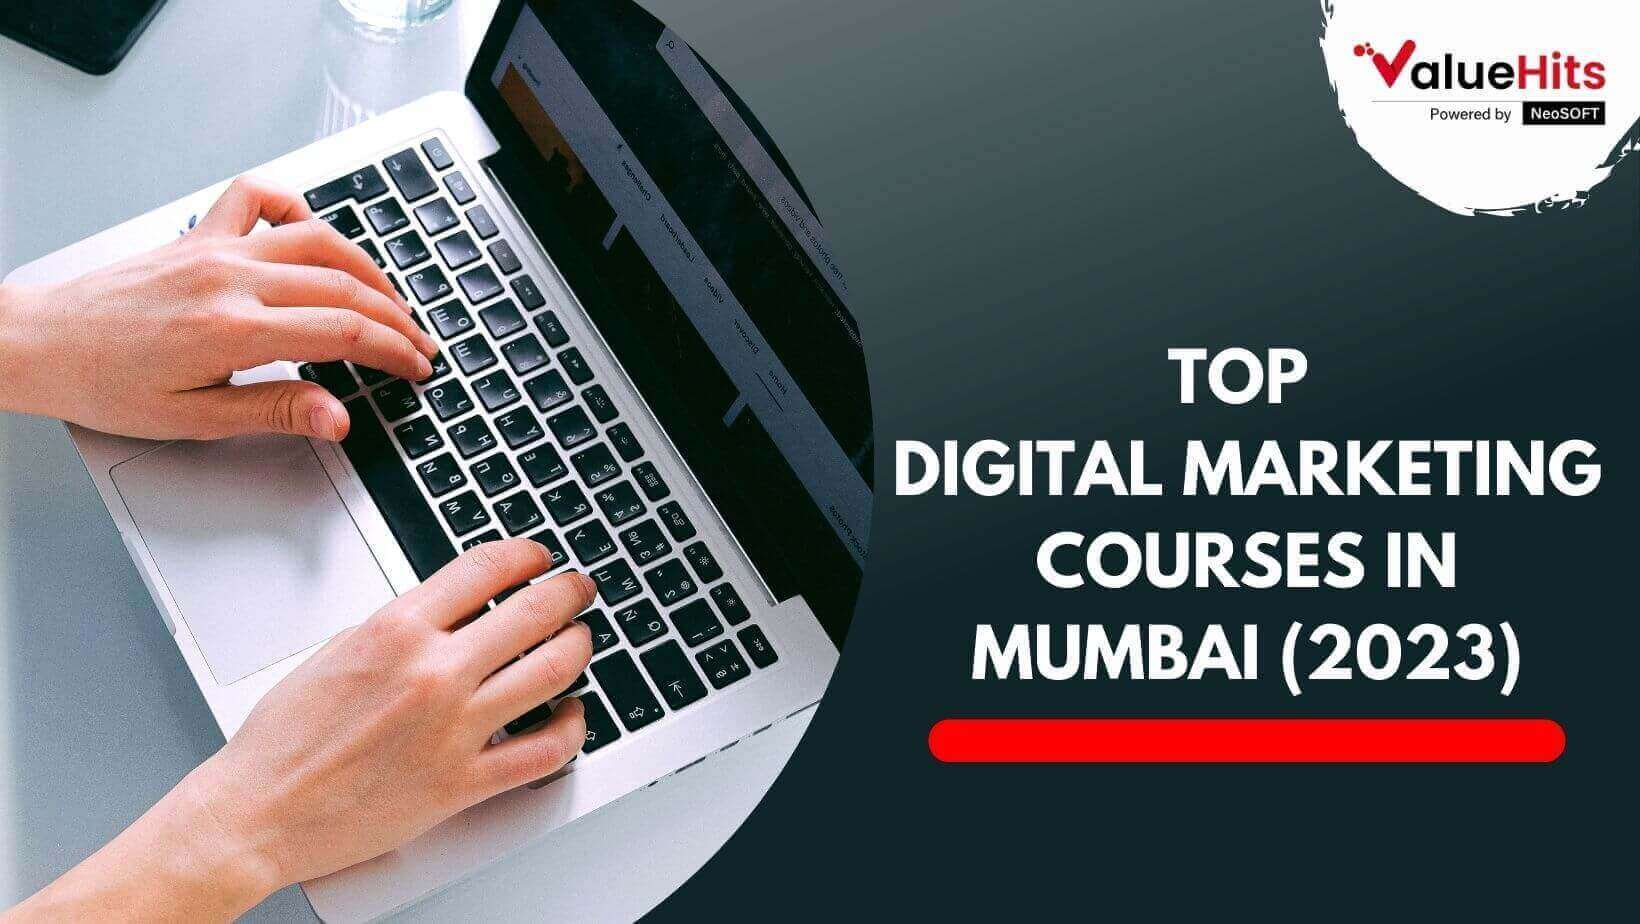 Top Digital Marketing Courses in Mumbai (2023)